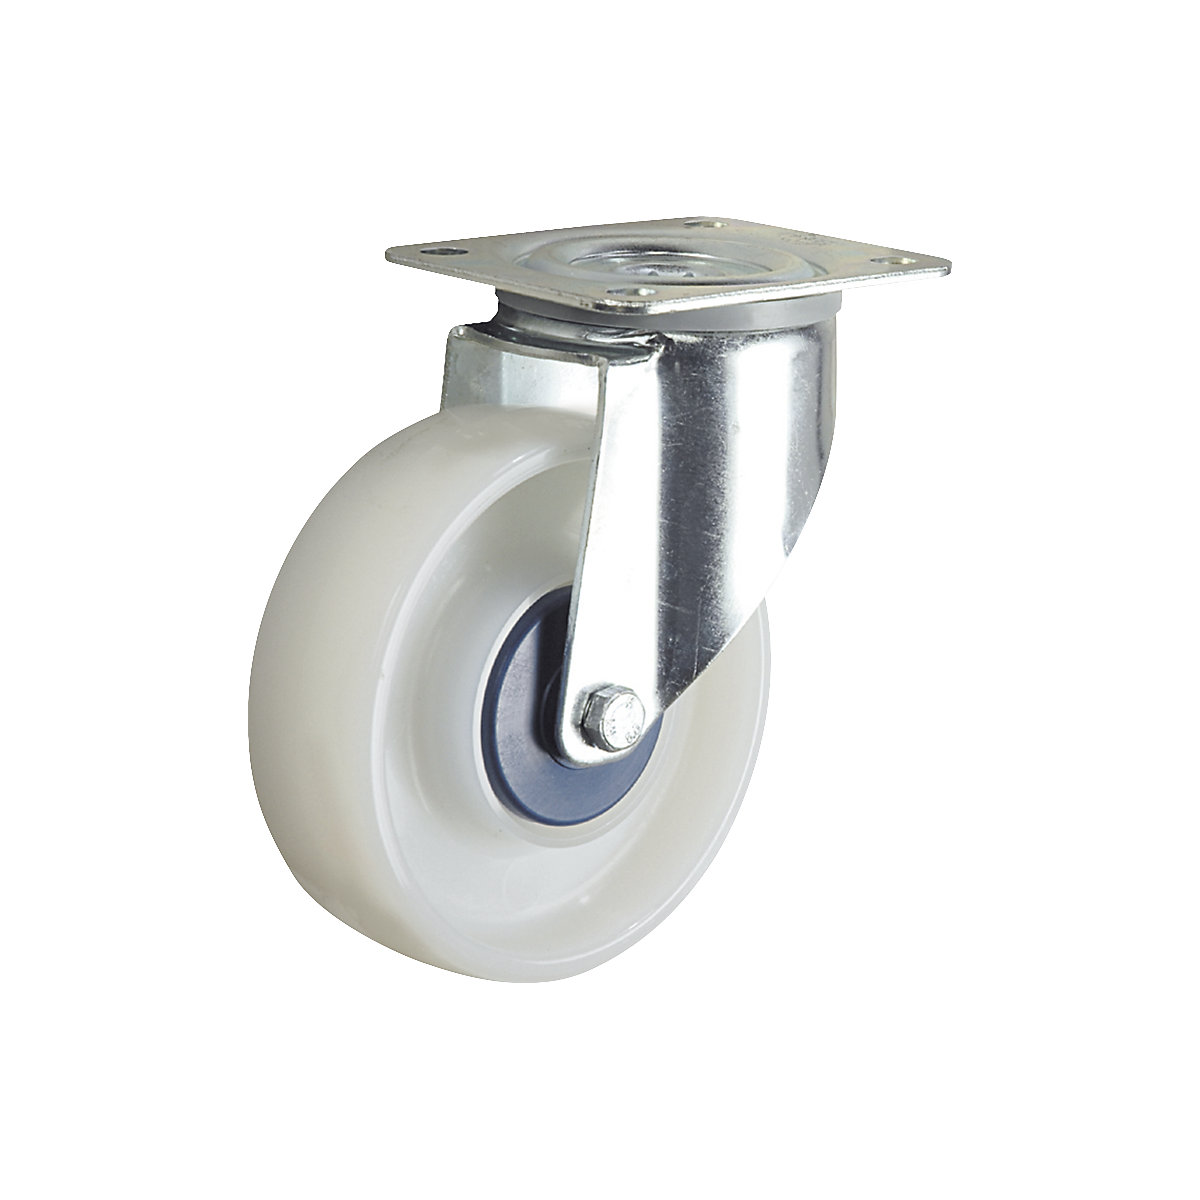 Roue polyamide, blanche – TENTE, Ø x largeur roues 125 x 40 mm, roulette pivotante-4